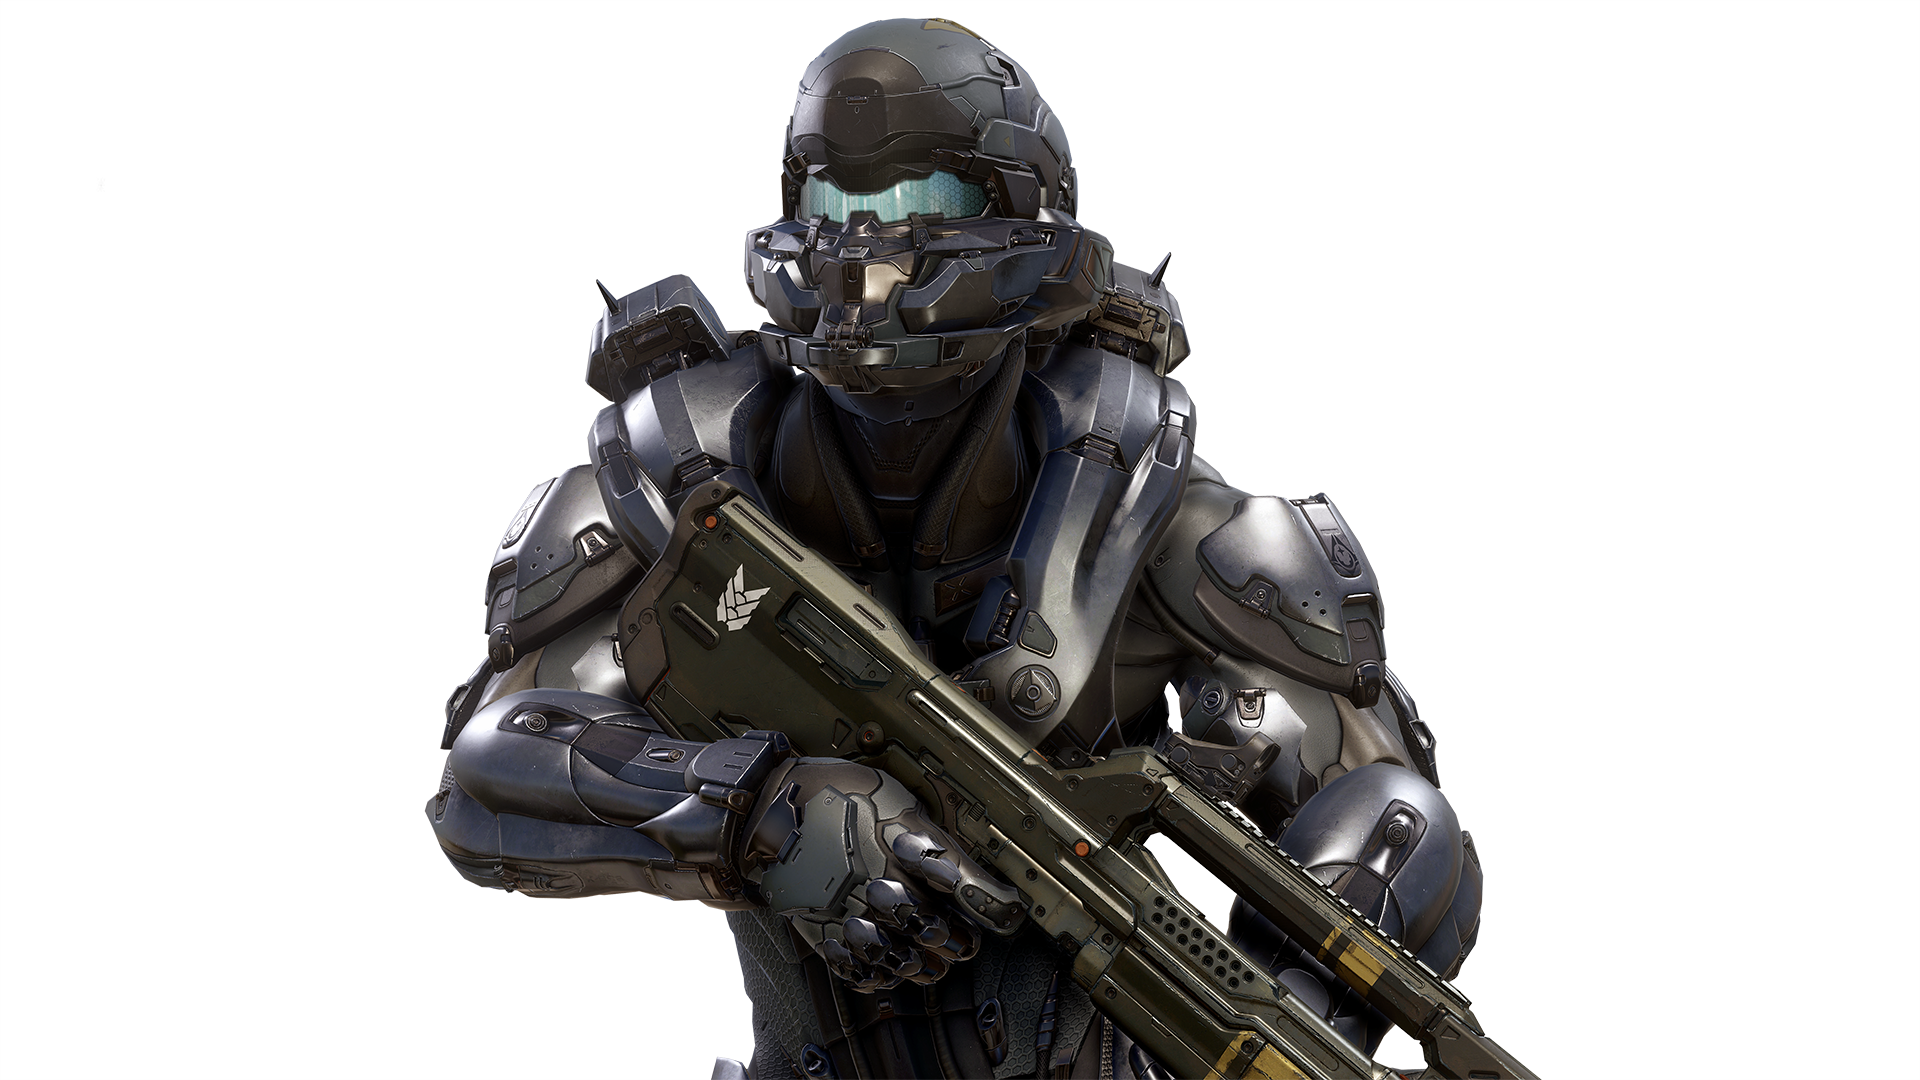 General 1920x1080 Spartan Locke Halo 5 Halo 5: Guardians Halo (game) Spartans (Halo) video game characters video games dark background weapon